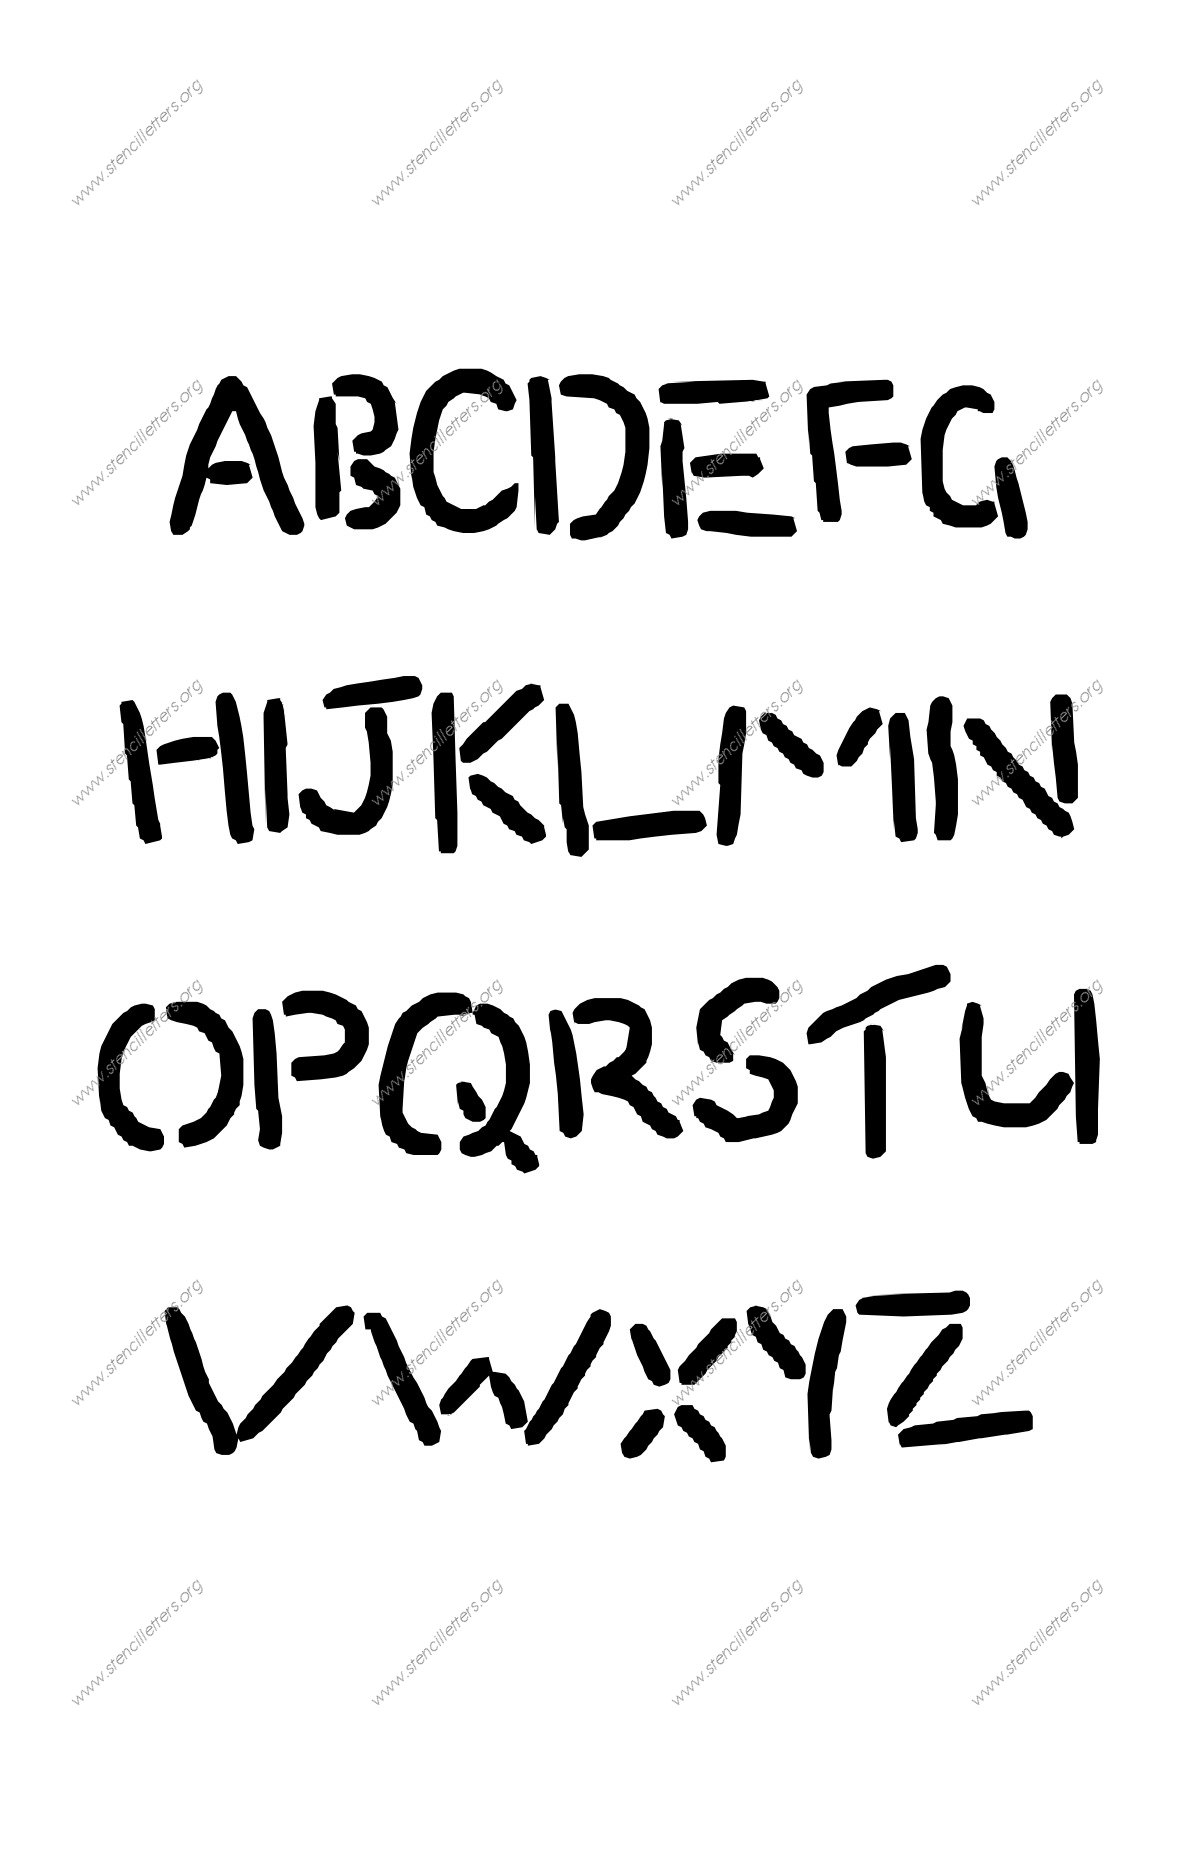 Rocky Novelty A to Z uppercase letter stencils